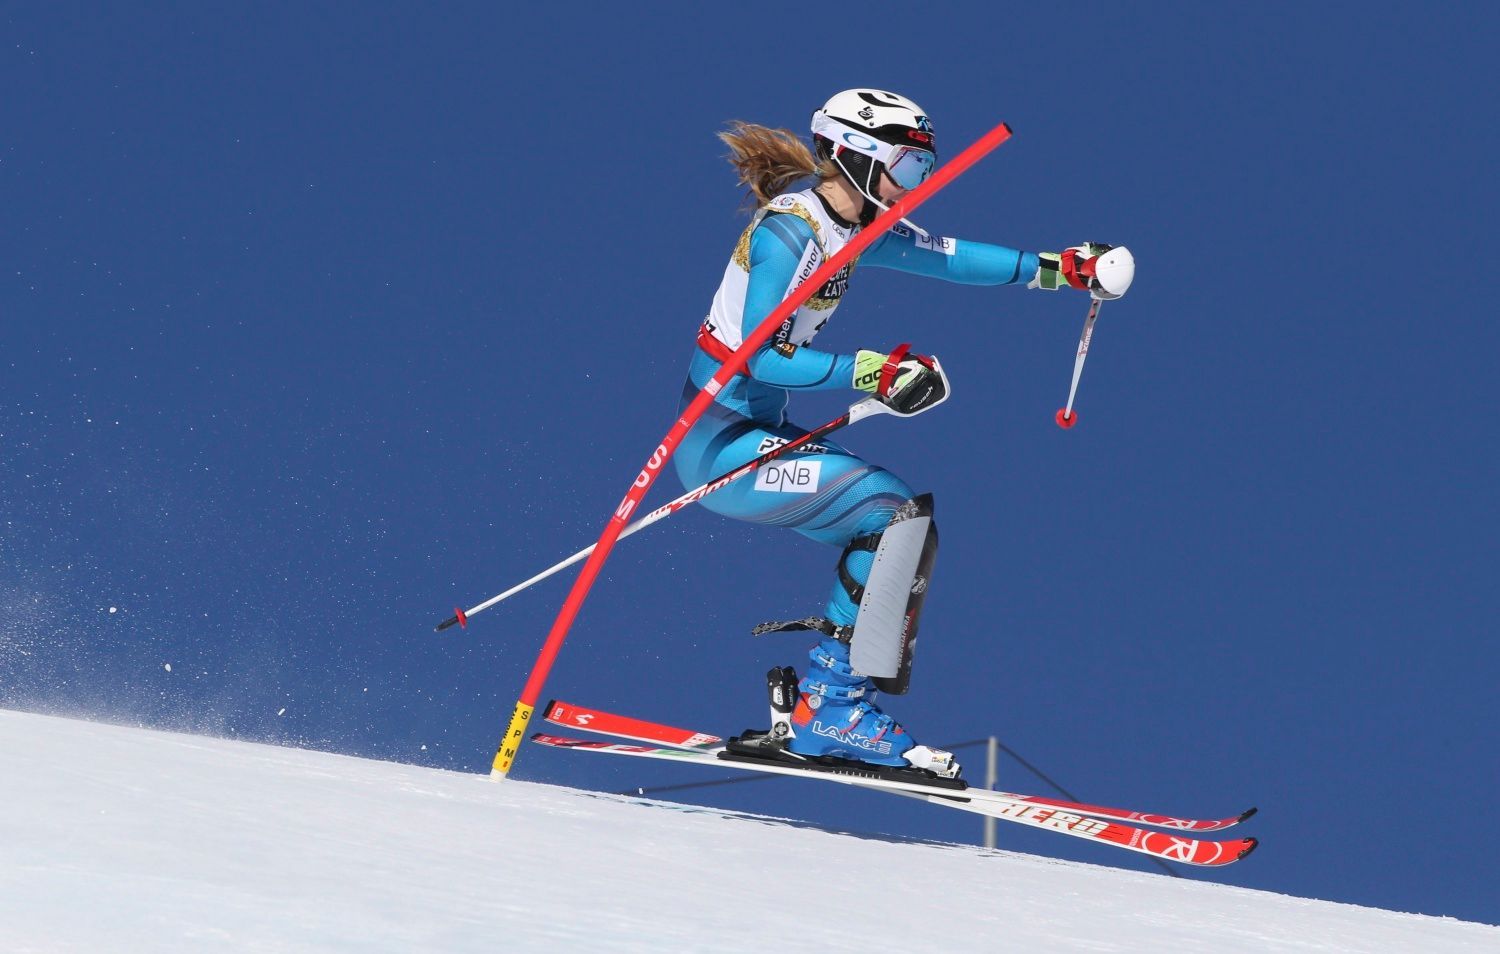 MS 2017, slalom Ž: Nina Lösethová